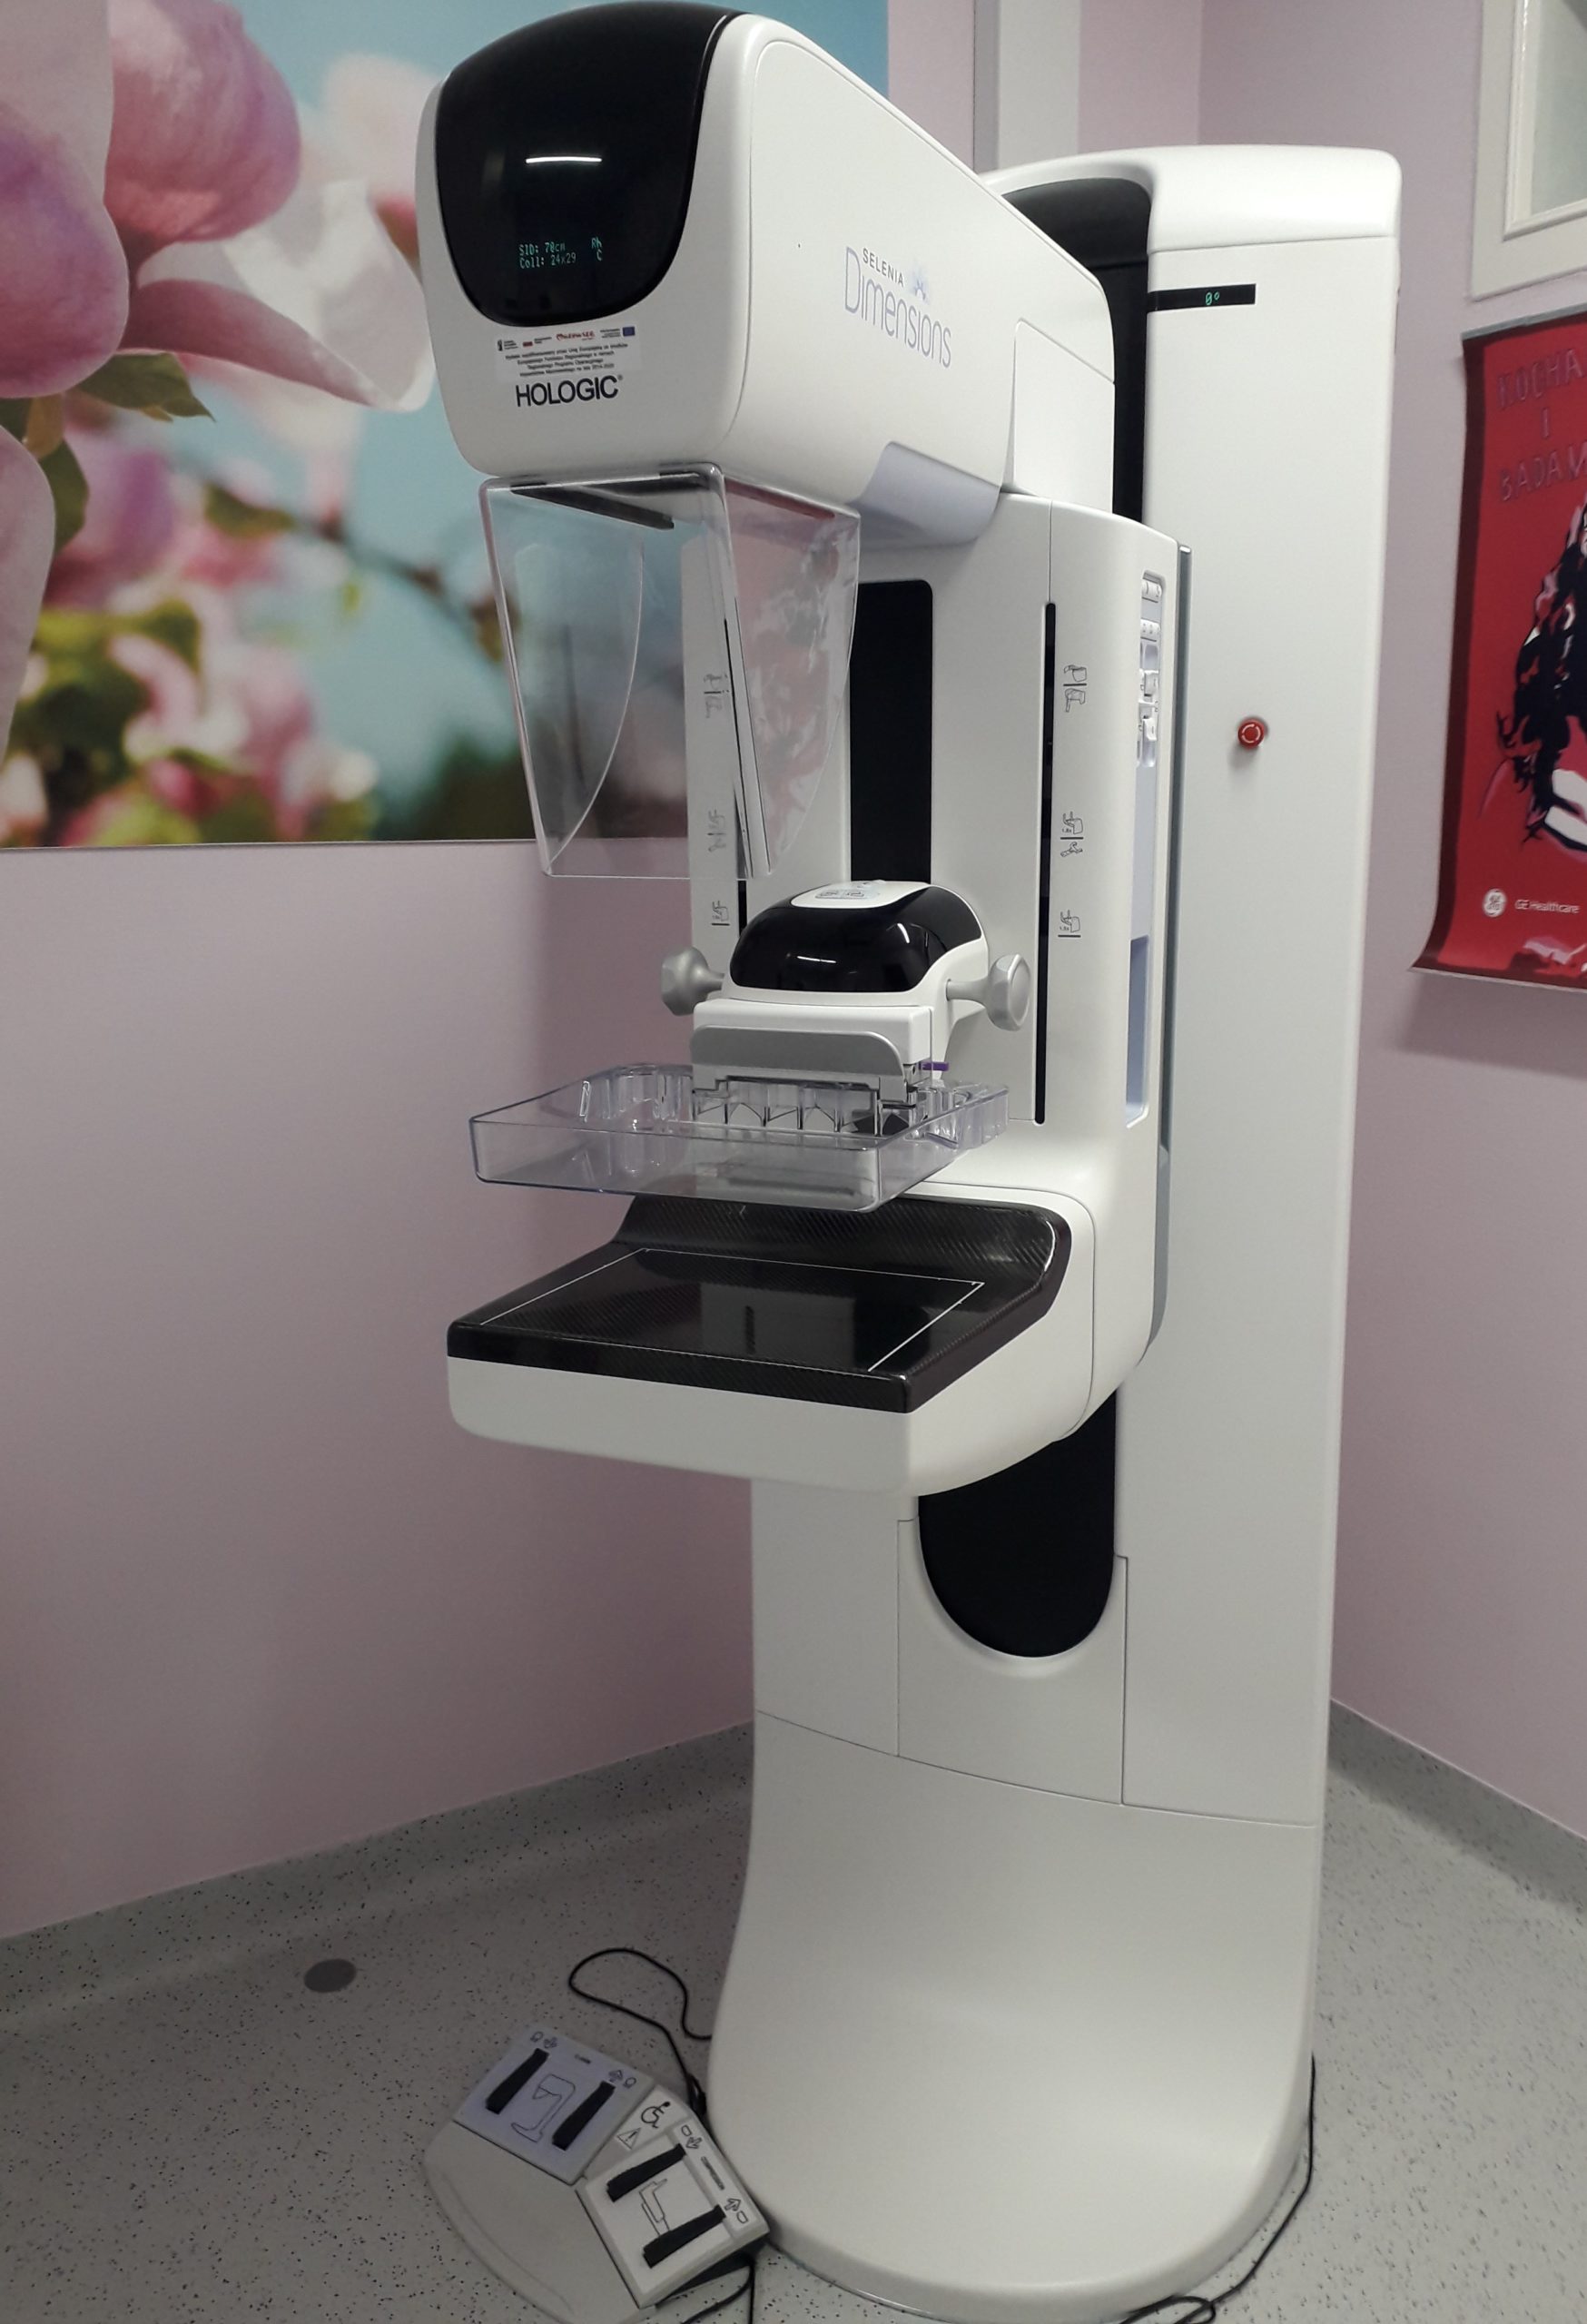 Mammograf zdj.1 - Dział RTG